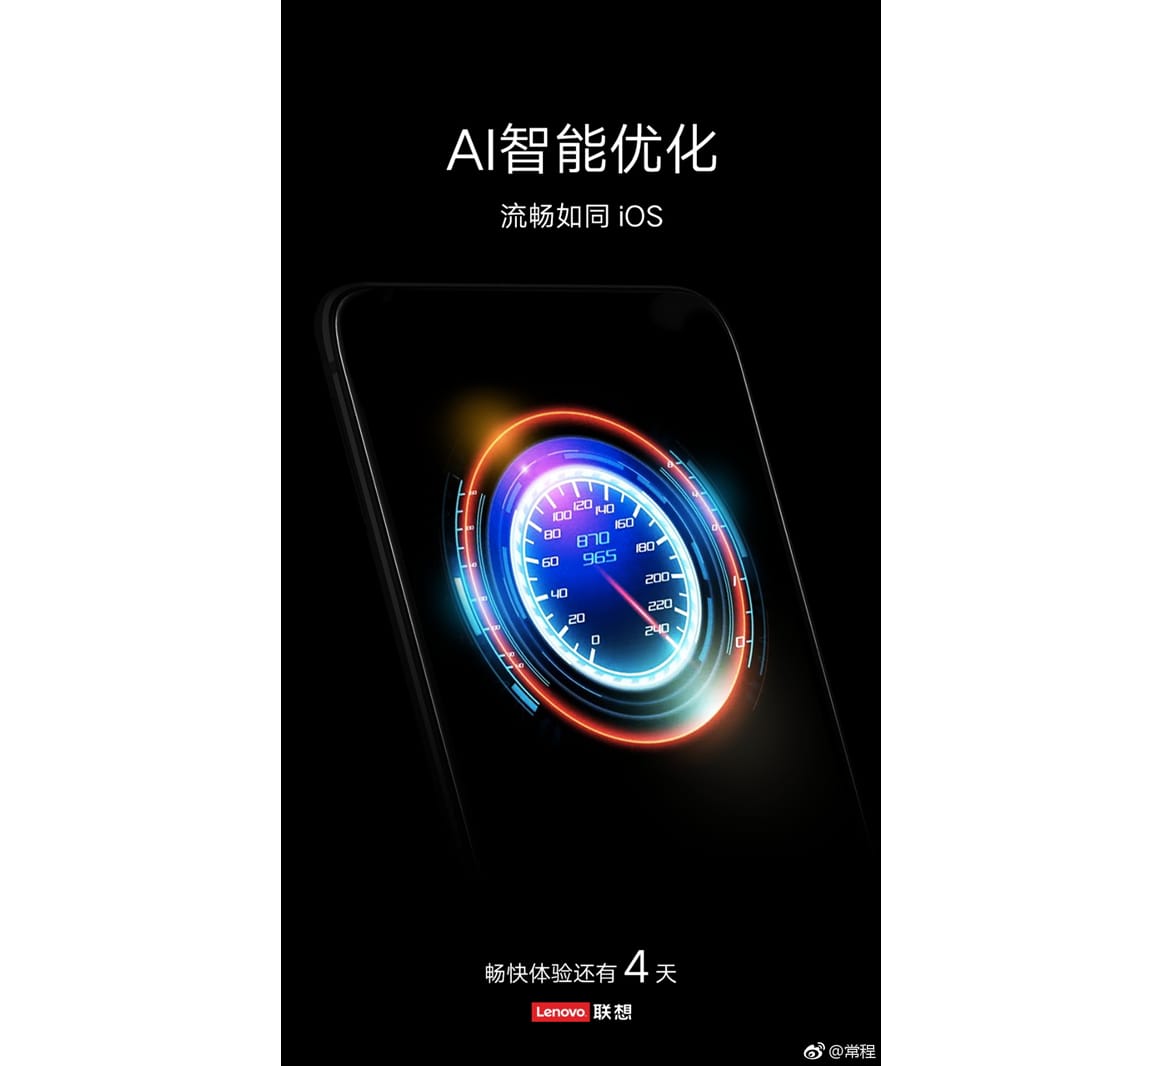 Конкурента Xiaomi Redmi Note 5 -- Lenovo S5 представят 20 марта